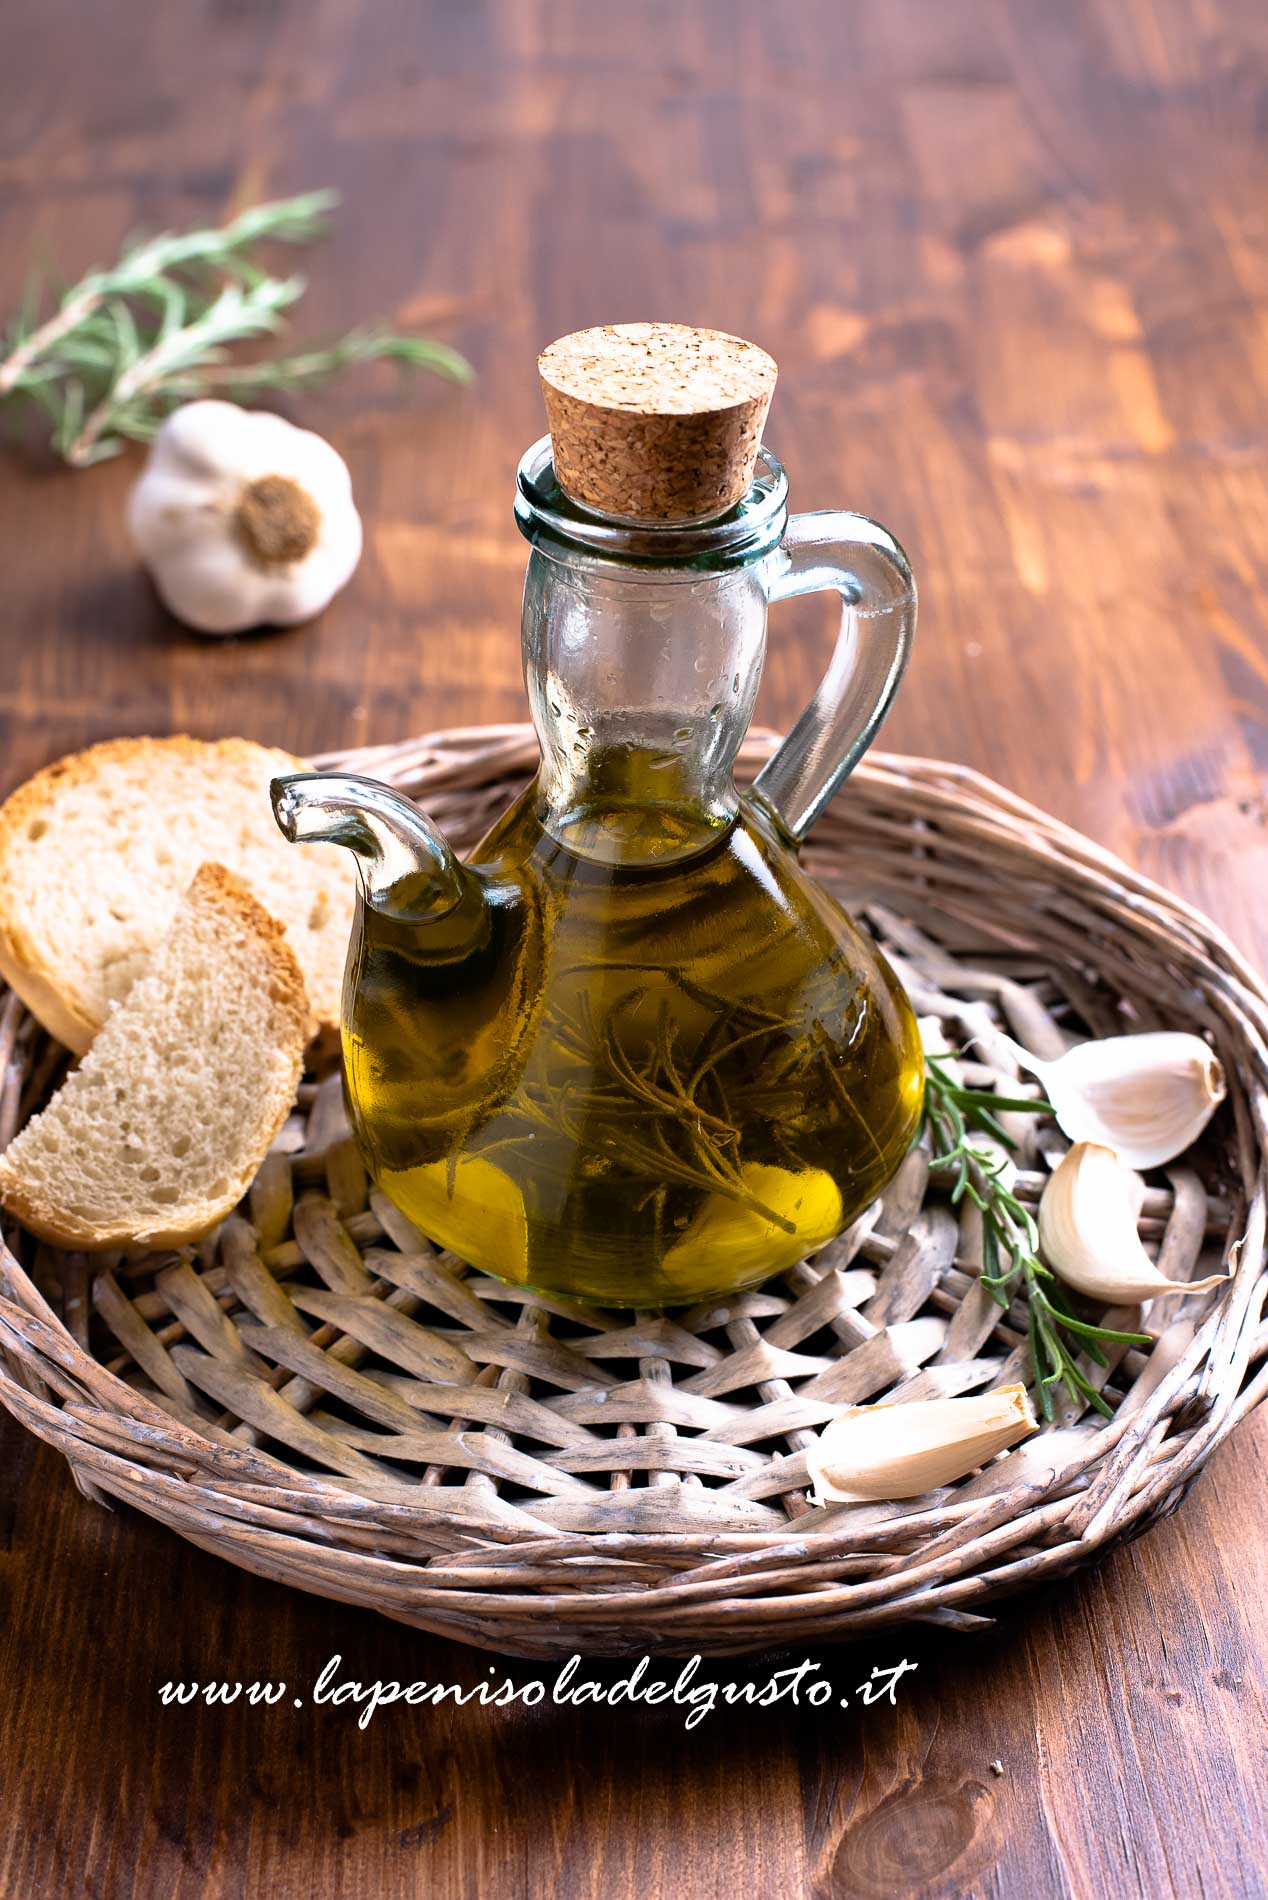 olio all aglio peperoncino fatto in casa rosmarino erbe aromatiche come preparare olio aromatizzato ricetta mediterranea